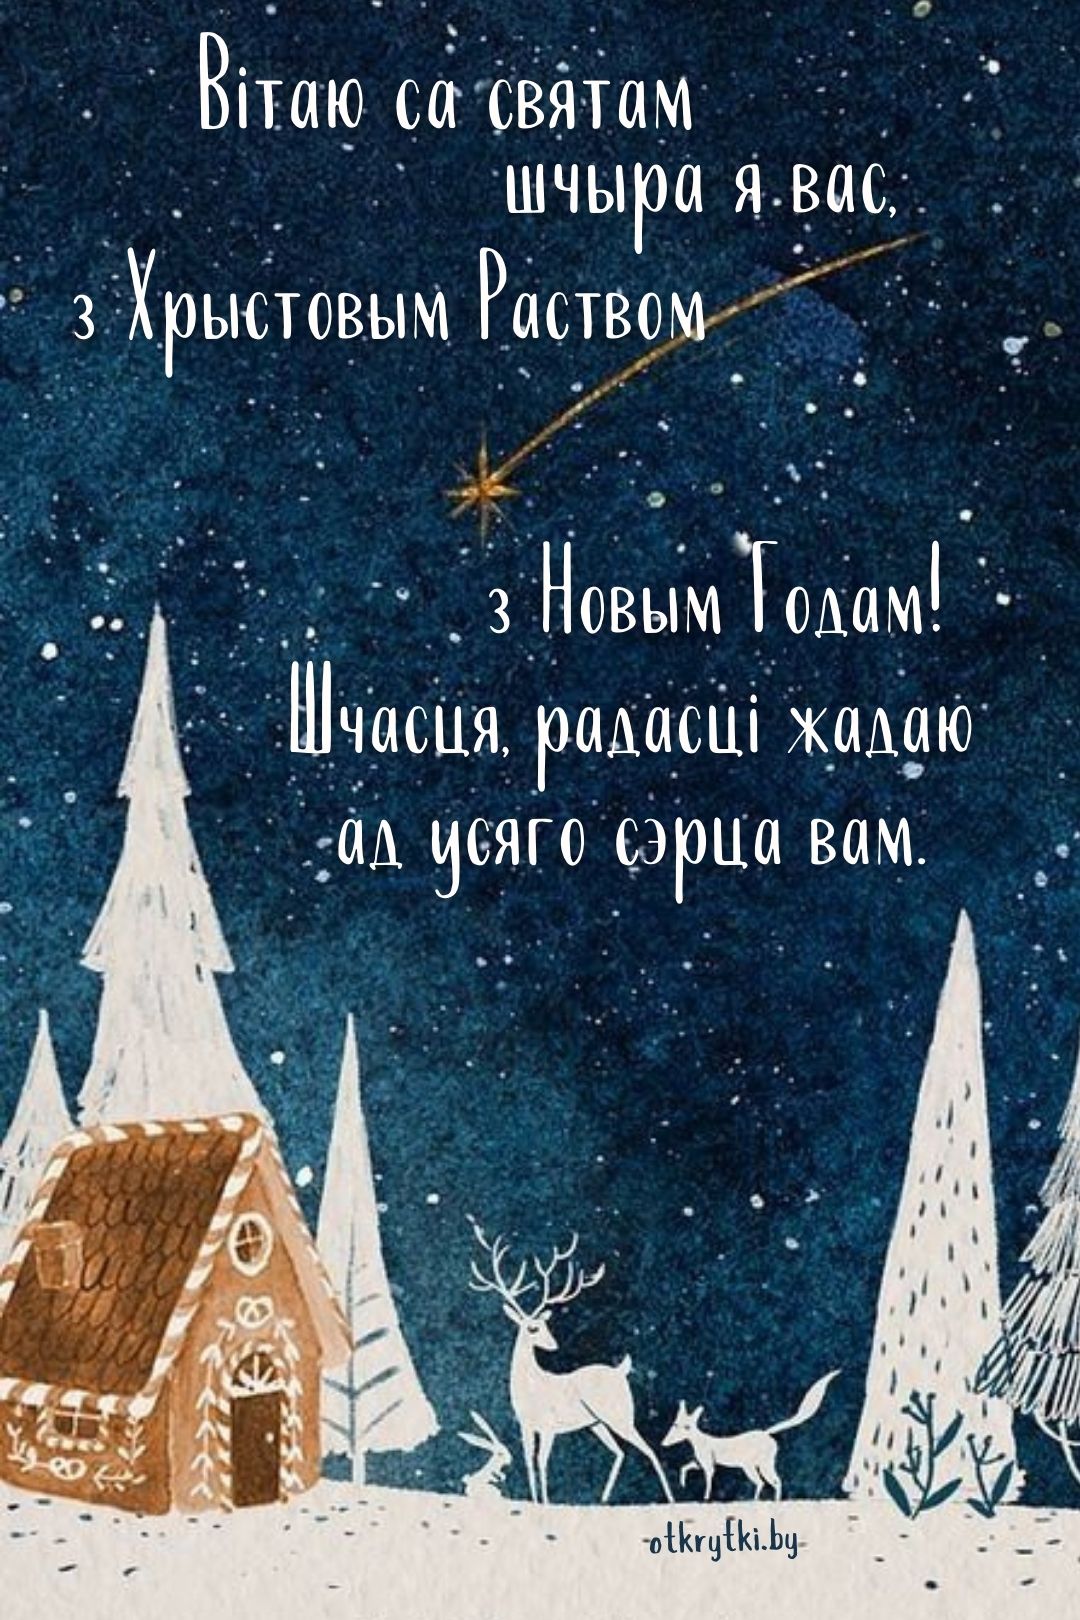 Открытка с Рождеством на белорусском языке